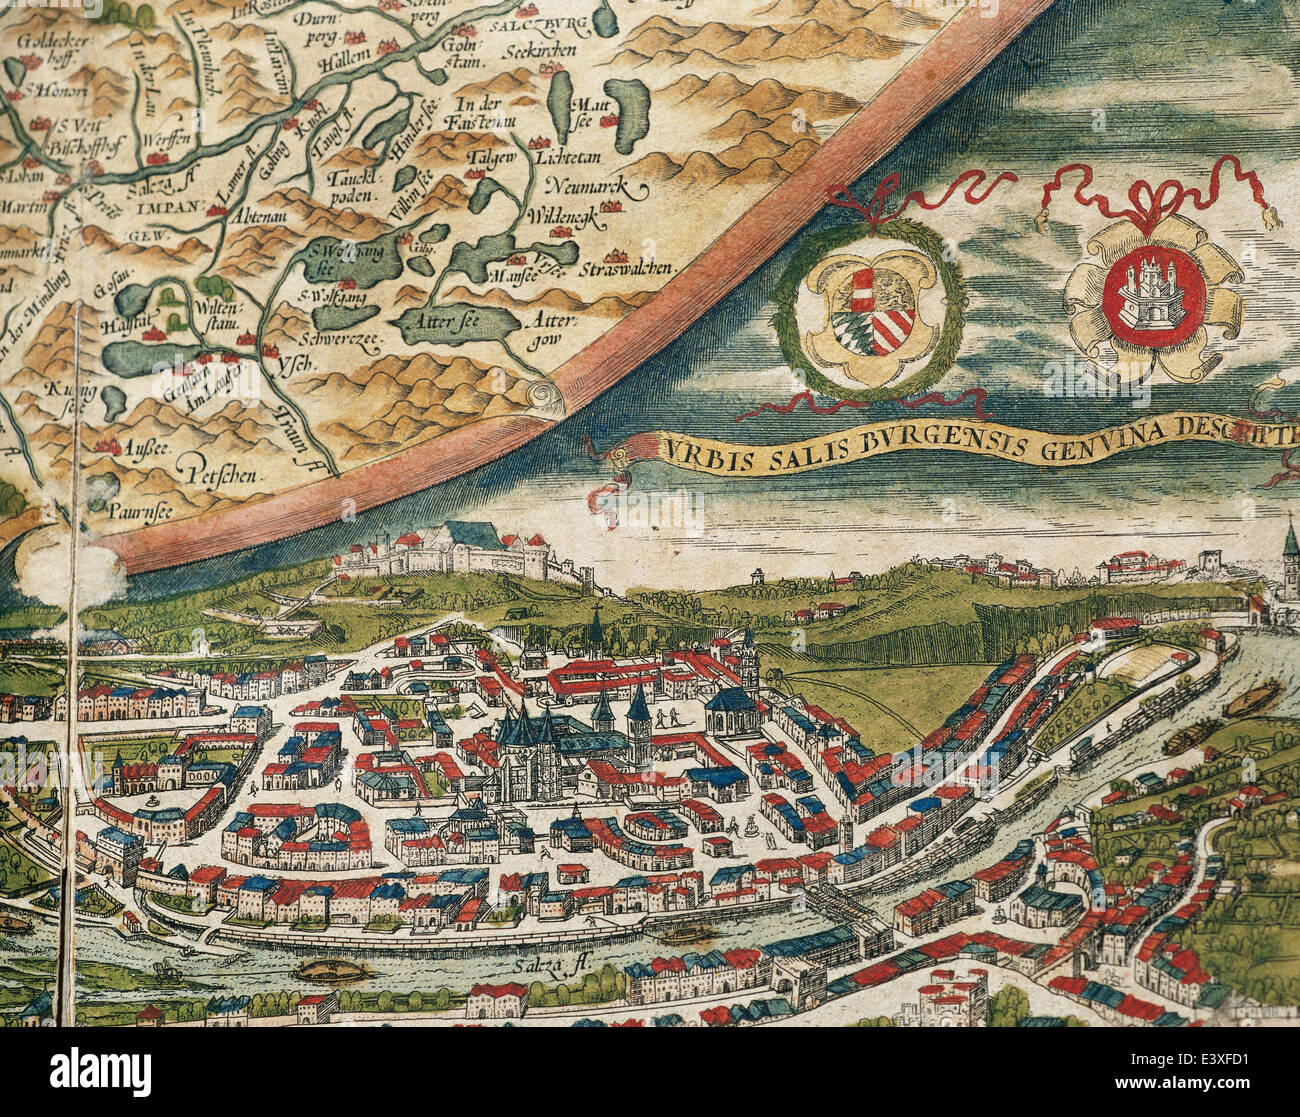 Blick auf Salzburg und Umgebung. Theatrum Orbis Terrarum von Abraham Ortelius (1527-1598). Erste Ausgabe. Antwerpen, 1574. Stockfoto